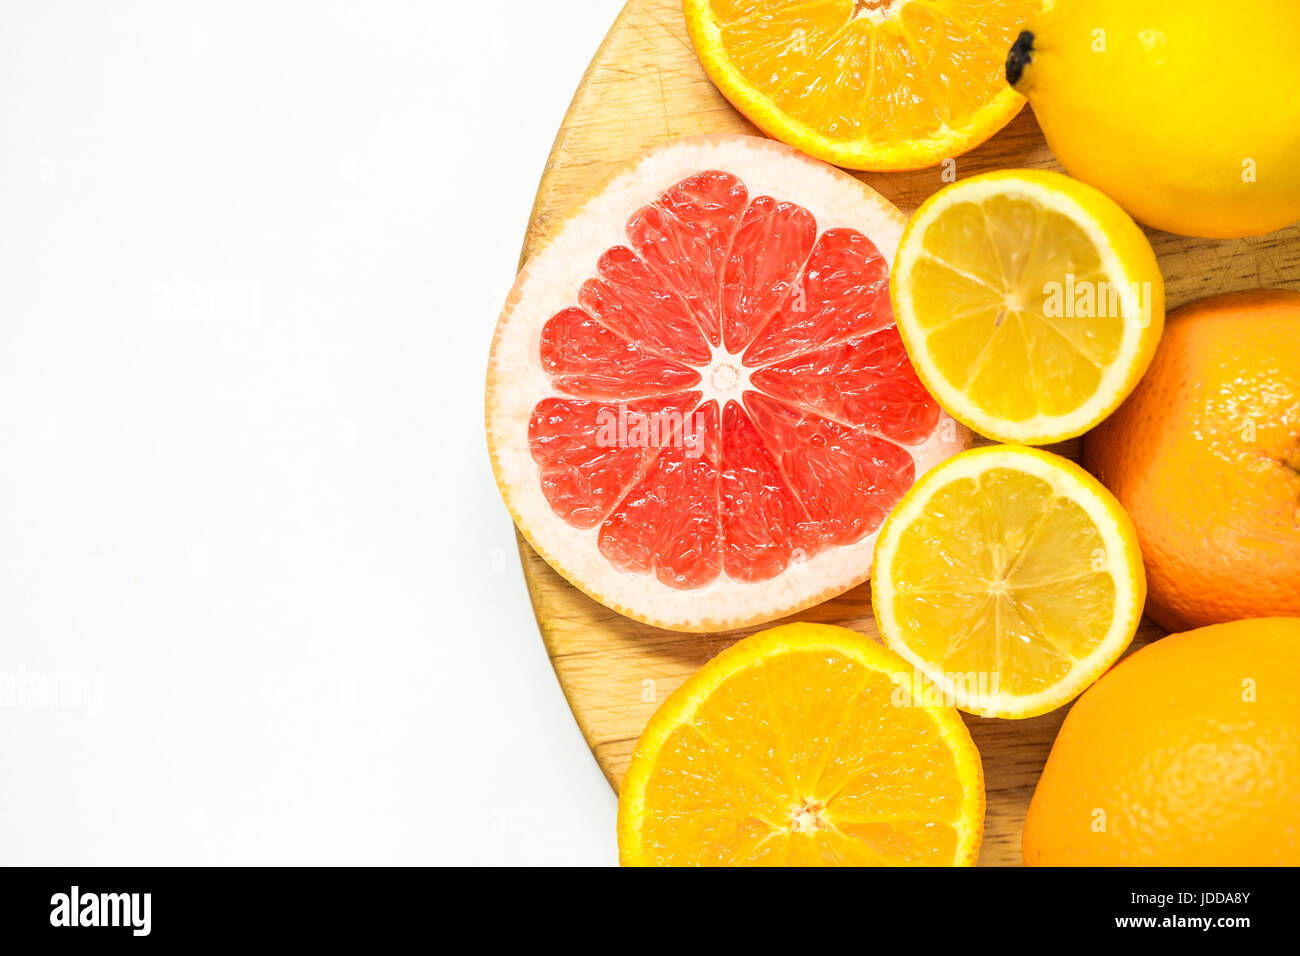 La vitamina C frutas - limón, naranja y pomelo cortes en woden placa de corte sobre fondo blanco. Foto de stock